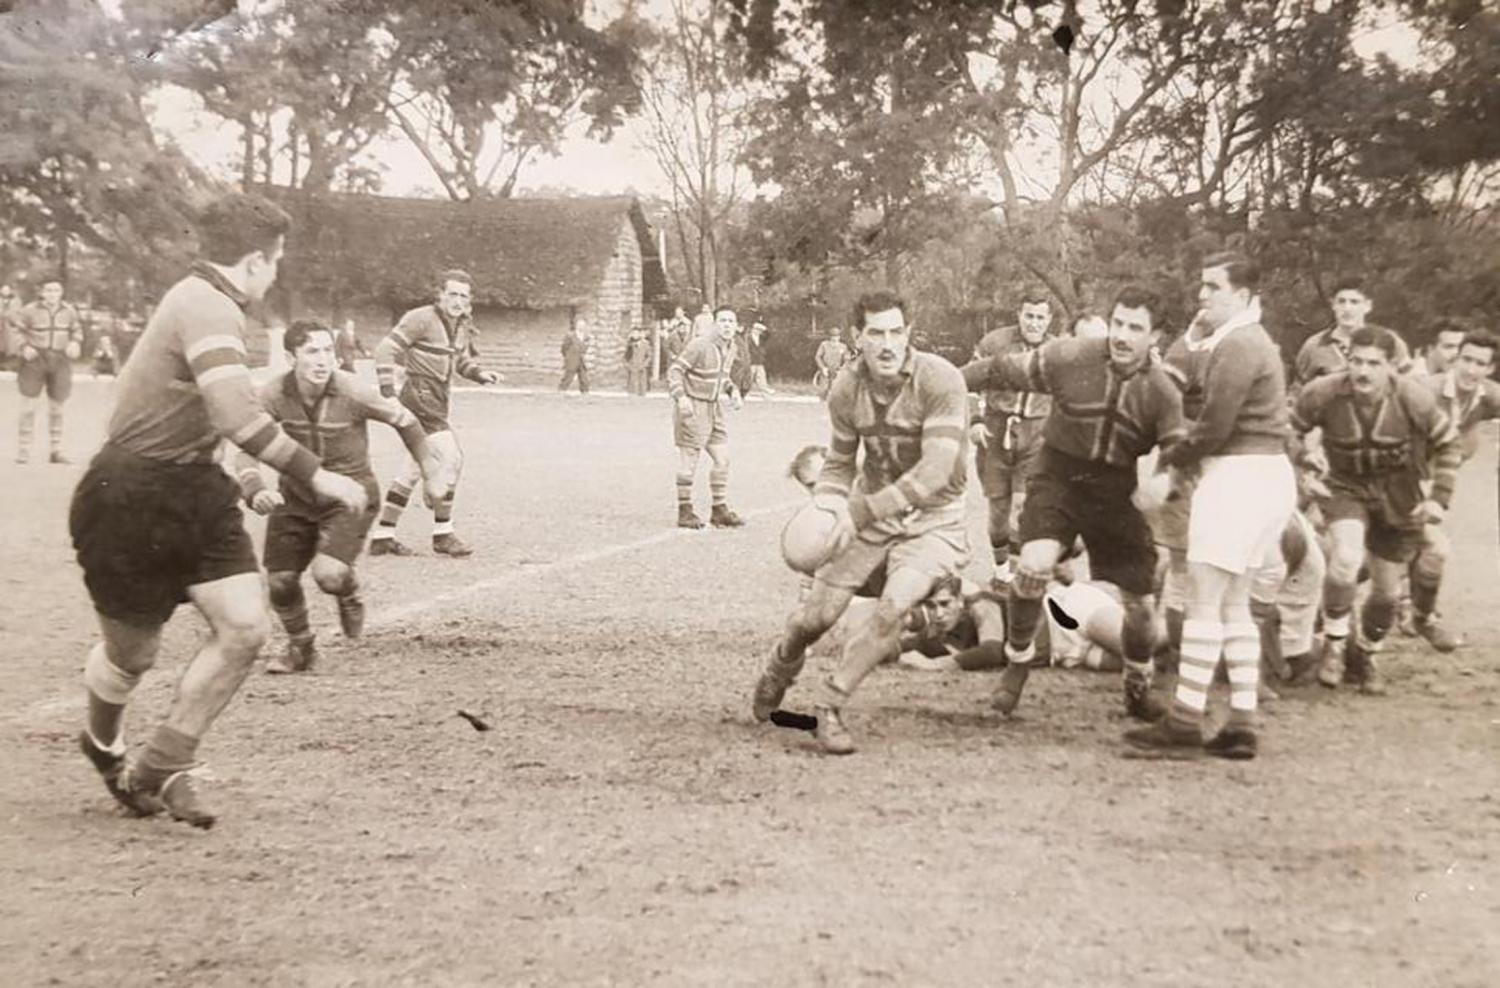 ÉXITO. Claudio “Caballo” Diambra contra Tucumán Rugby en 1954. Ese año, los “Purpurados” consiguieron su primer título, sin derrotas ni tries en contra. FOTOS / LA GACETA (ARCHIVO)